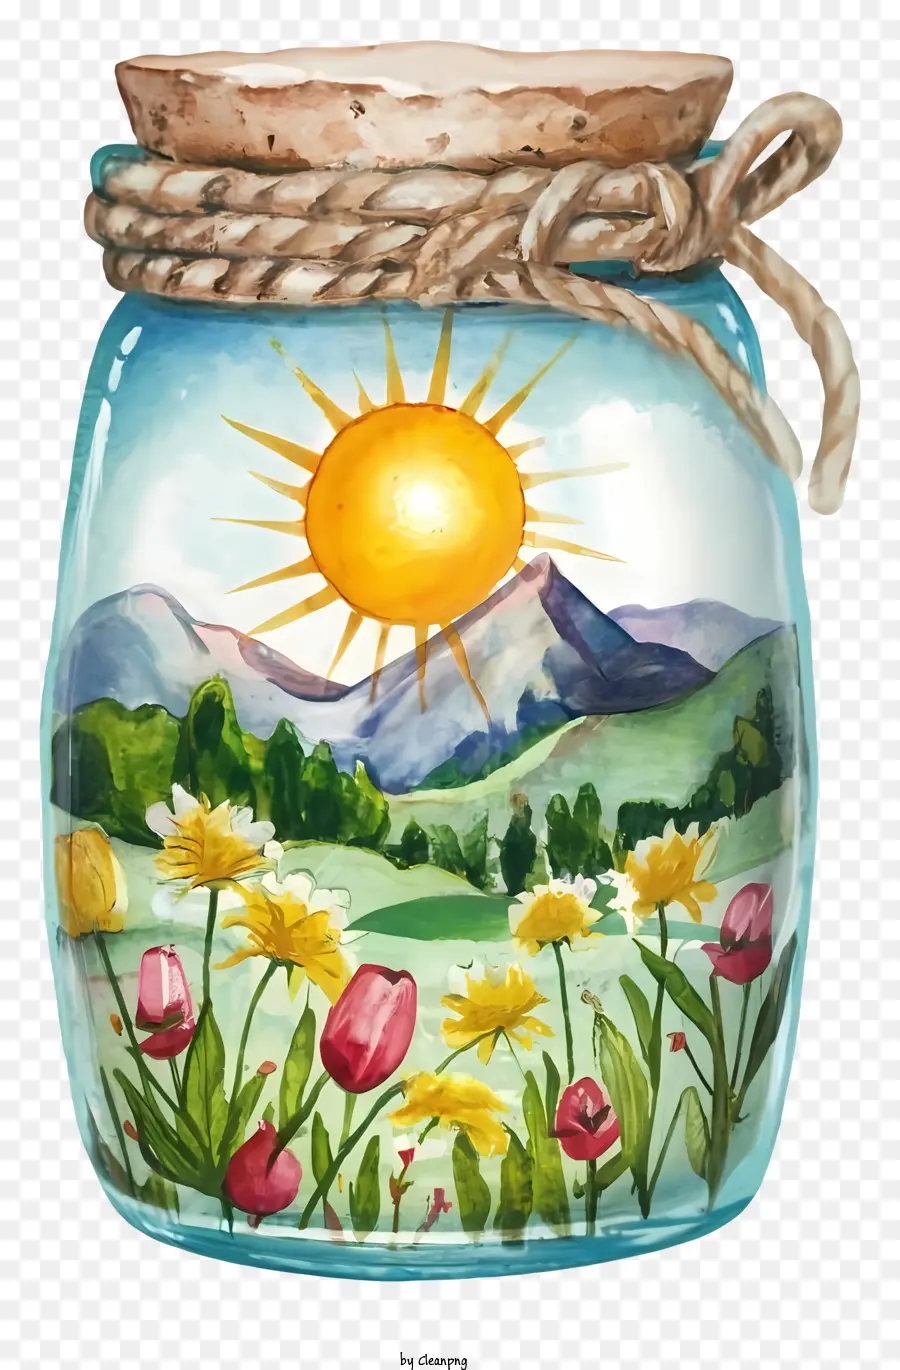 Gesteck - Lebendiges, mit Sonnenblumen gefülltes Glas am Tisch in der Landschaft